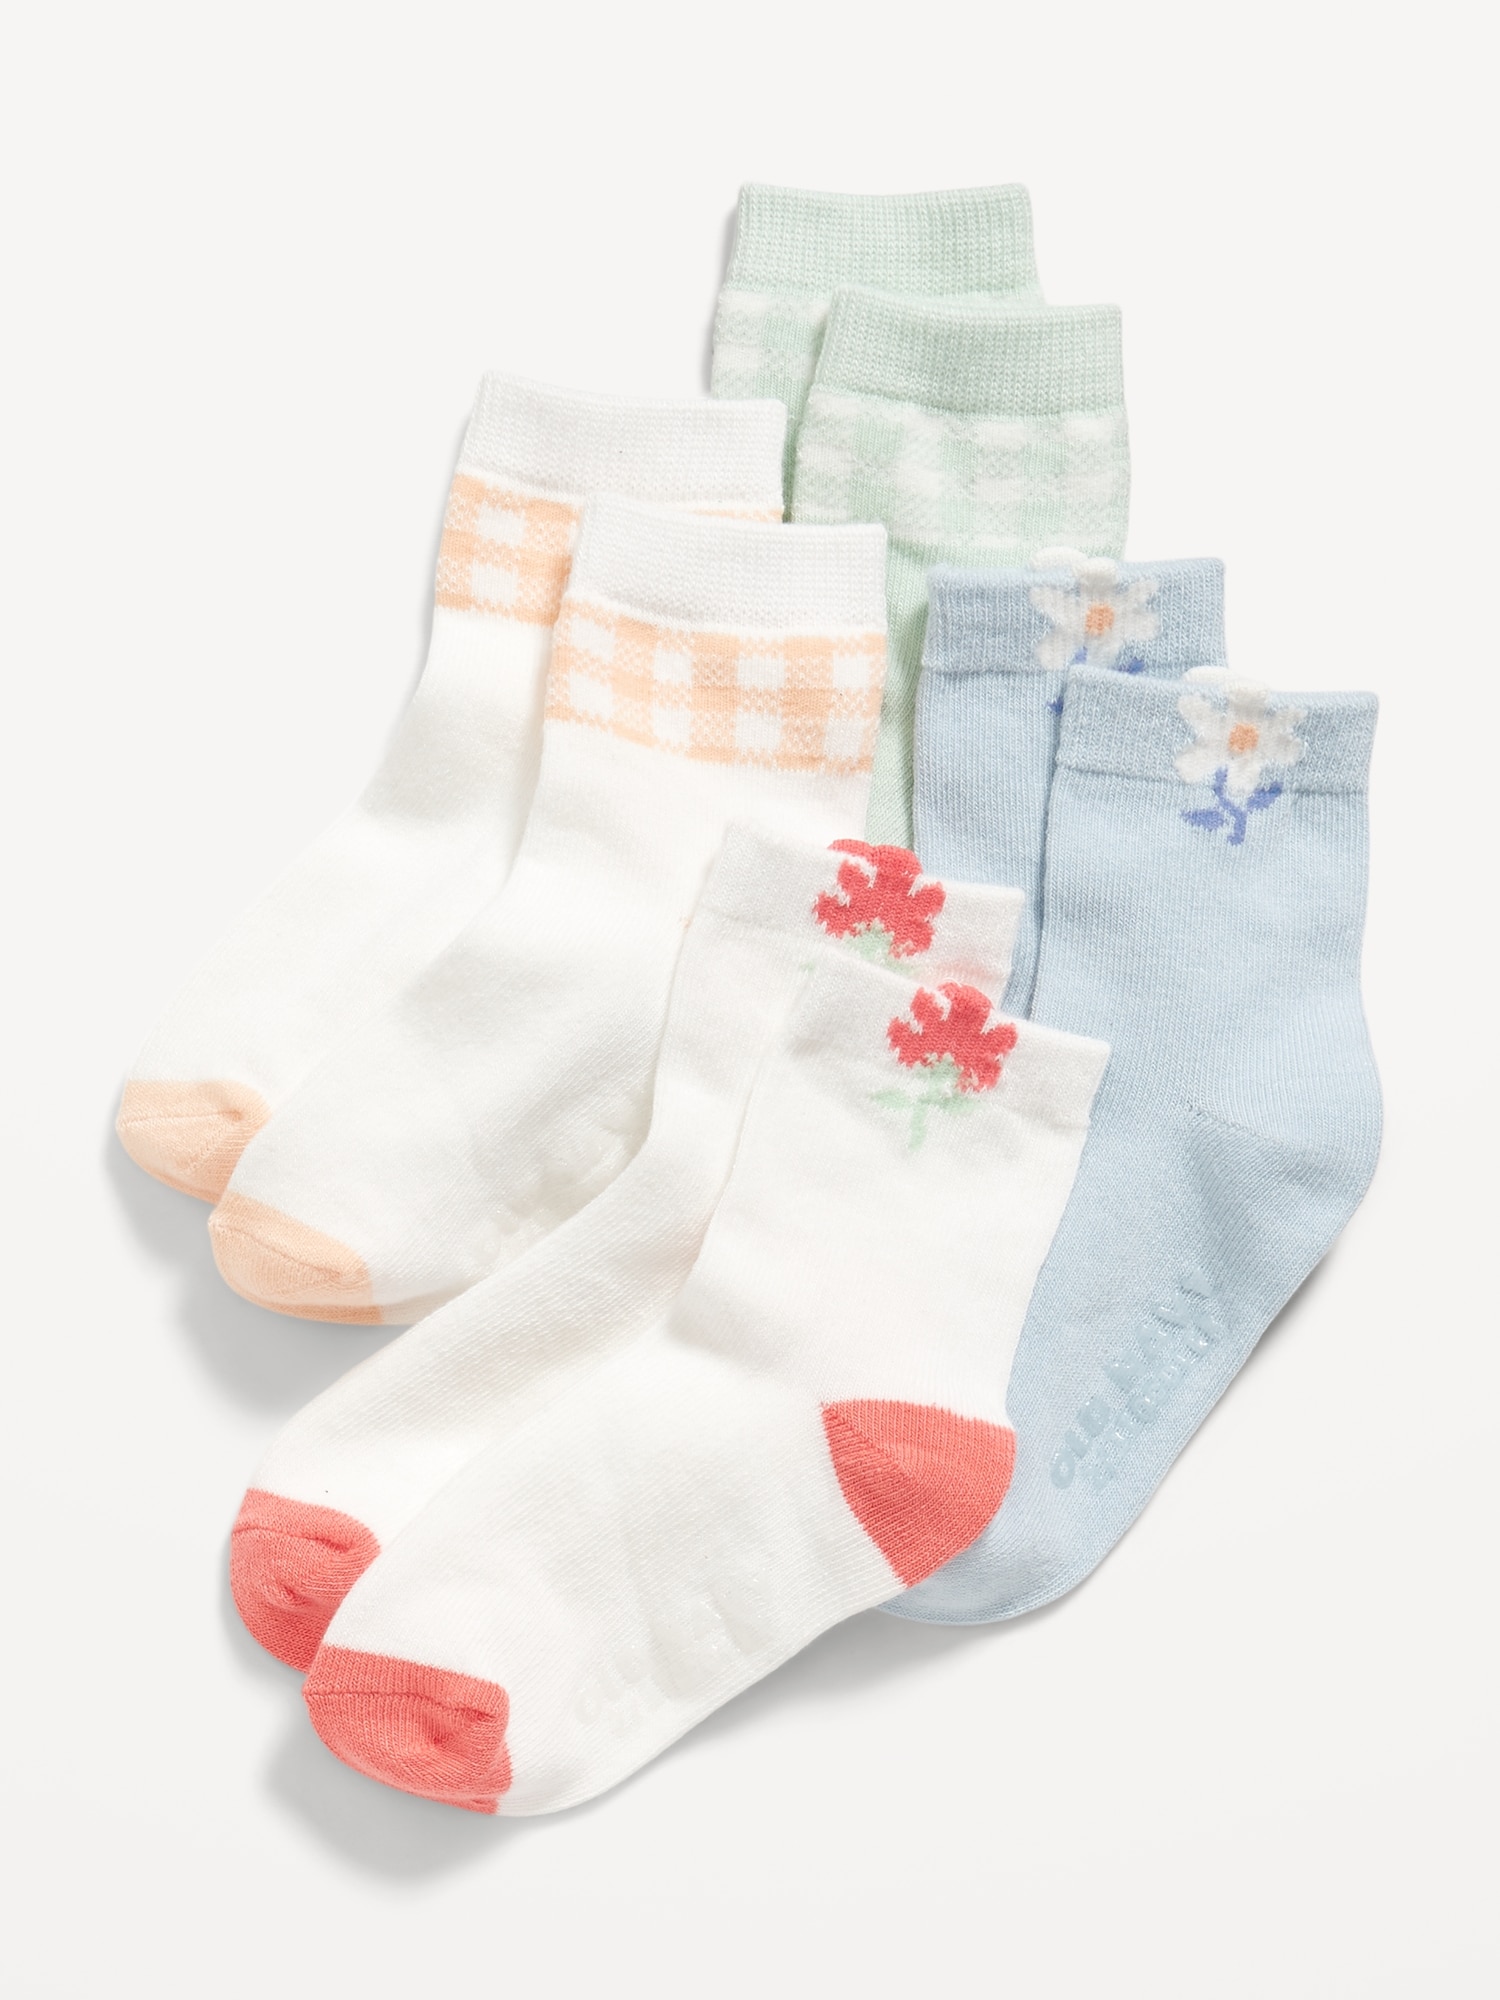 Unisex Crew Socks 4-Pack for Toddler & Baby | Old Navy